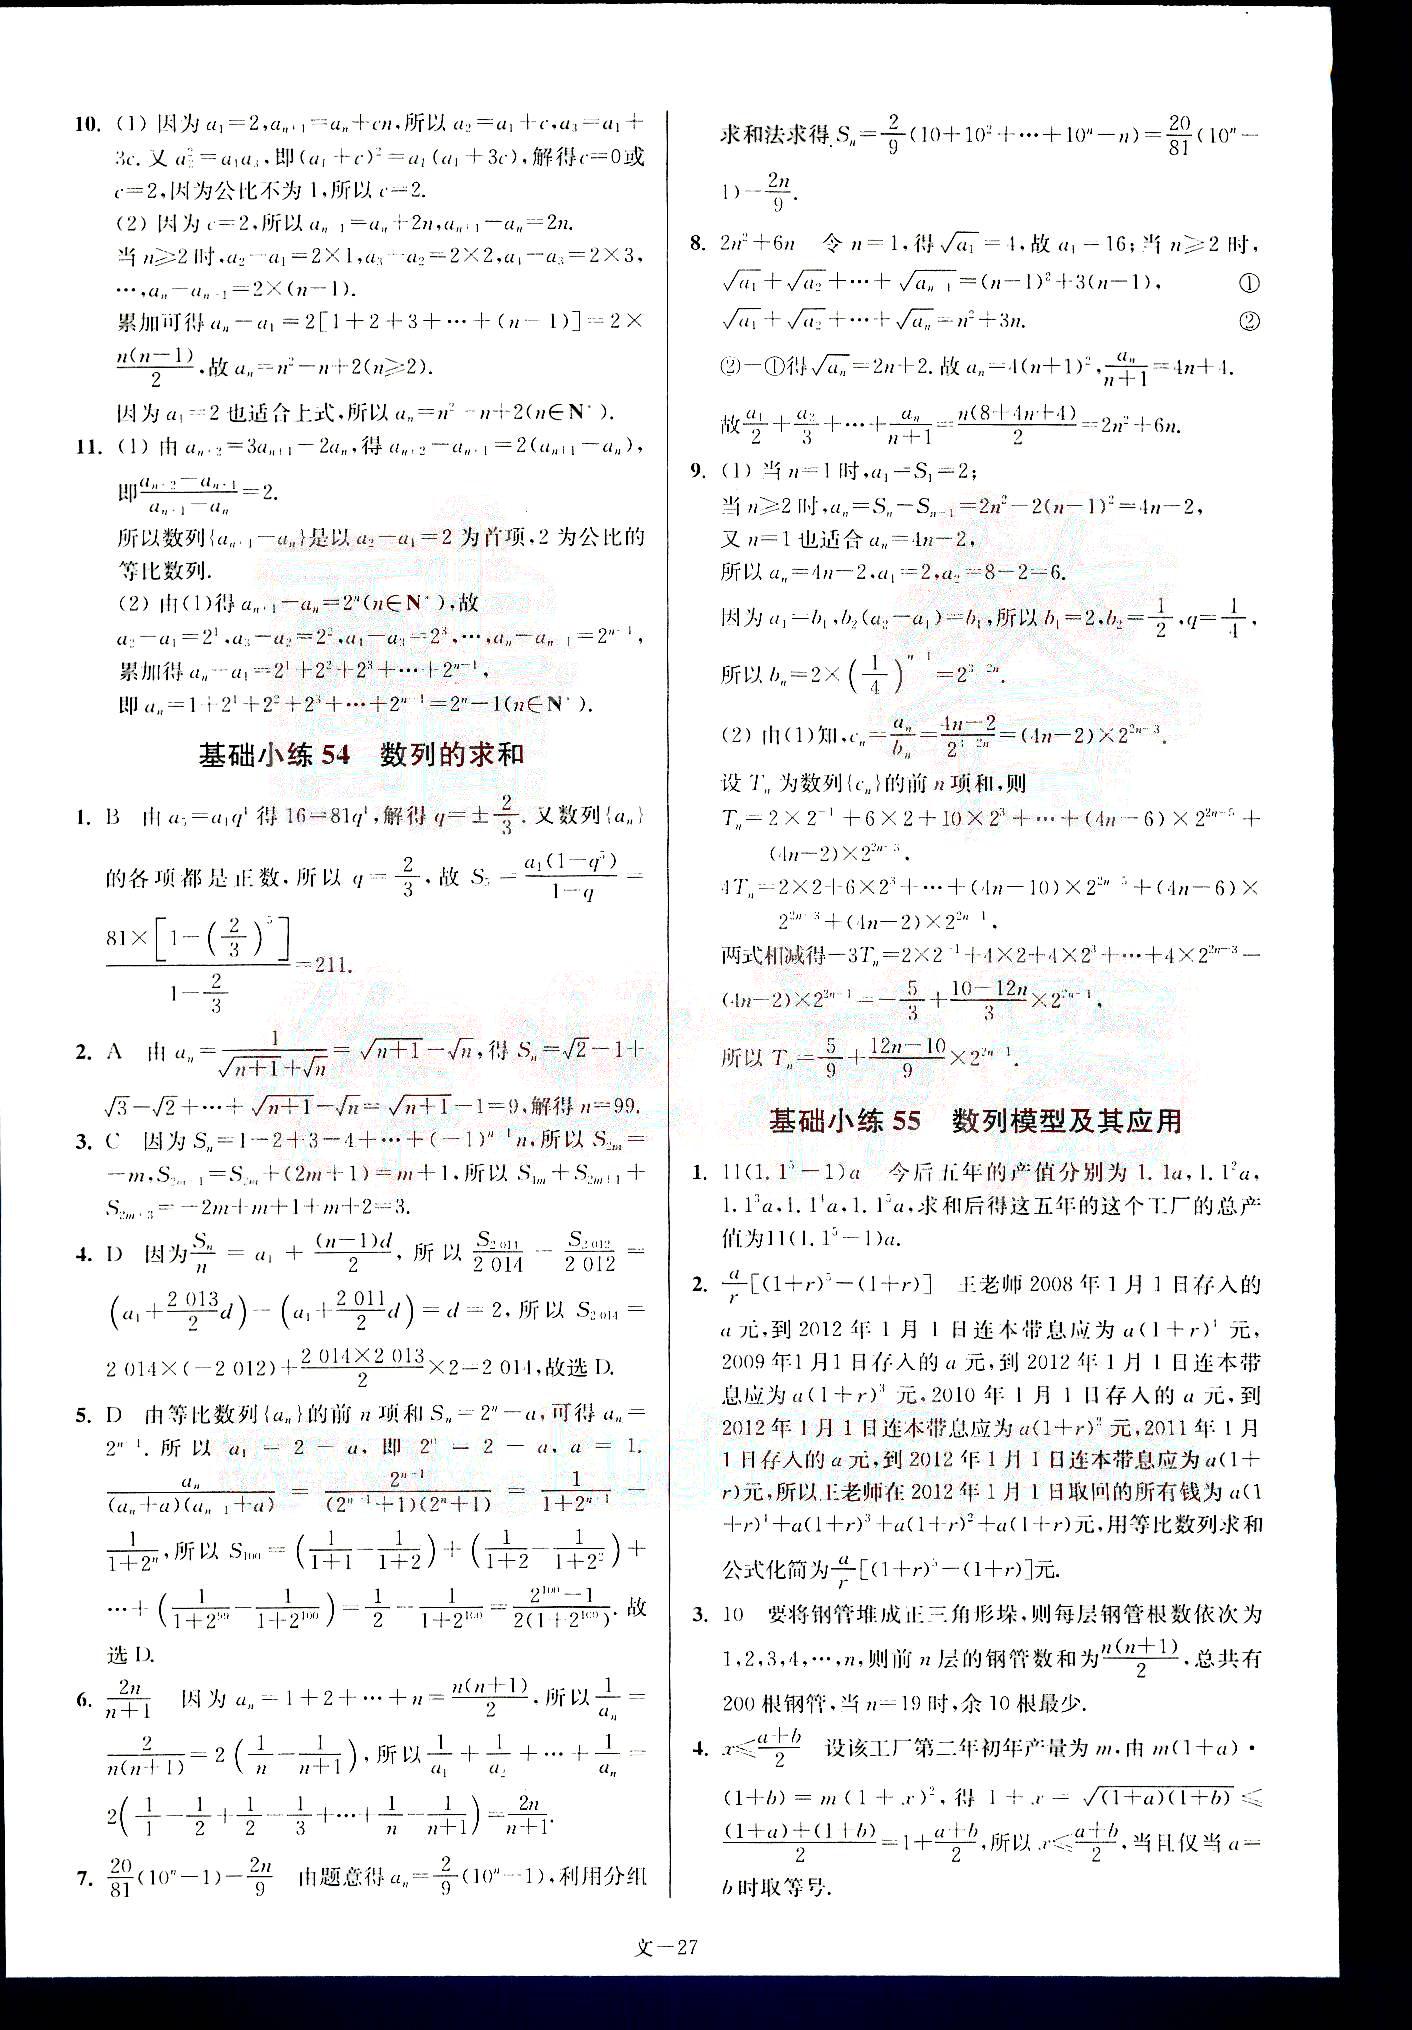 小题狂做-高考数学-文科-最基础篇南京大学出版社 第6部分 [2]